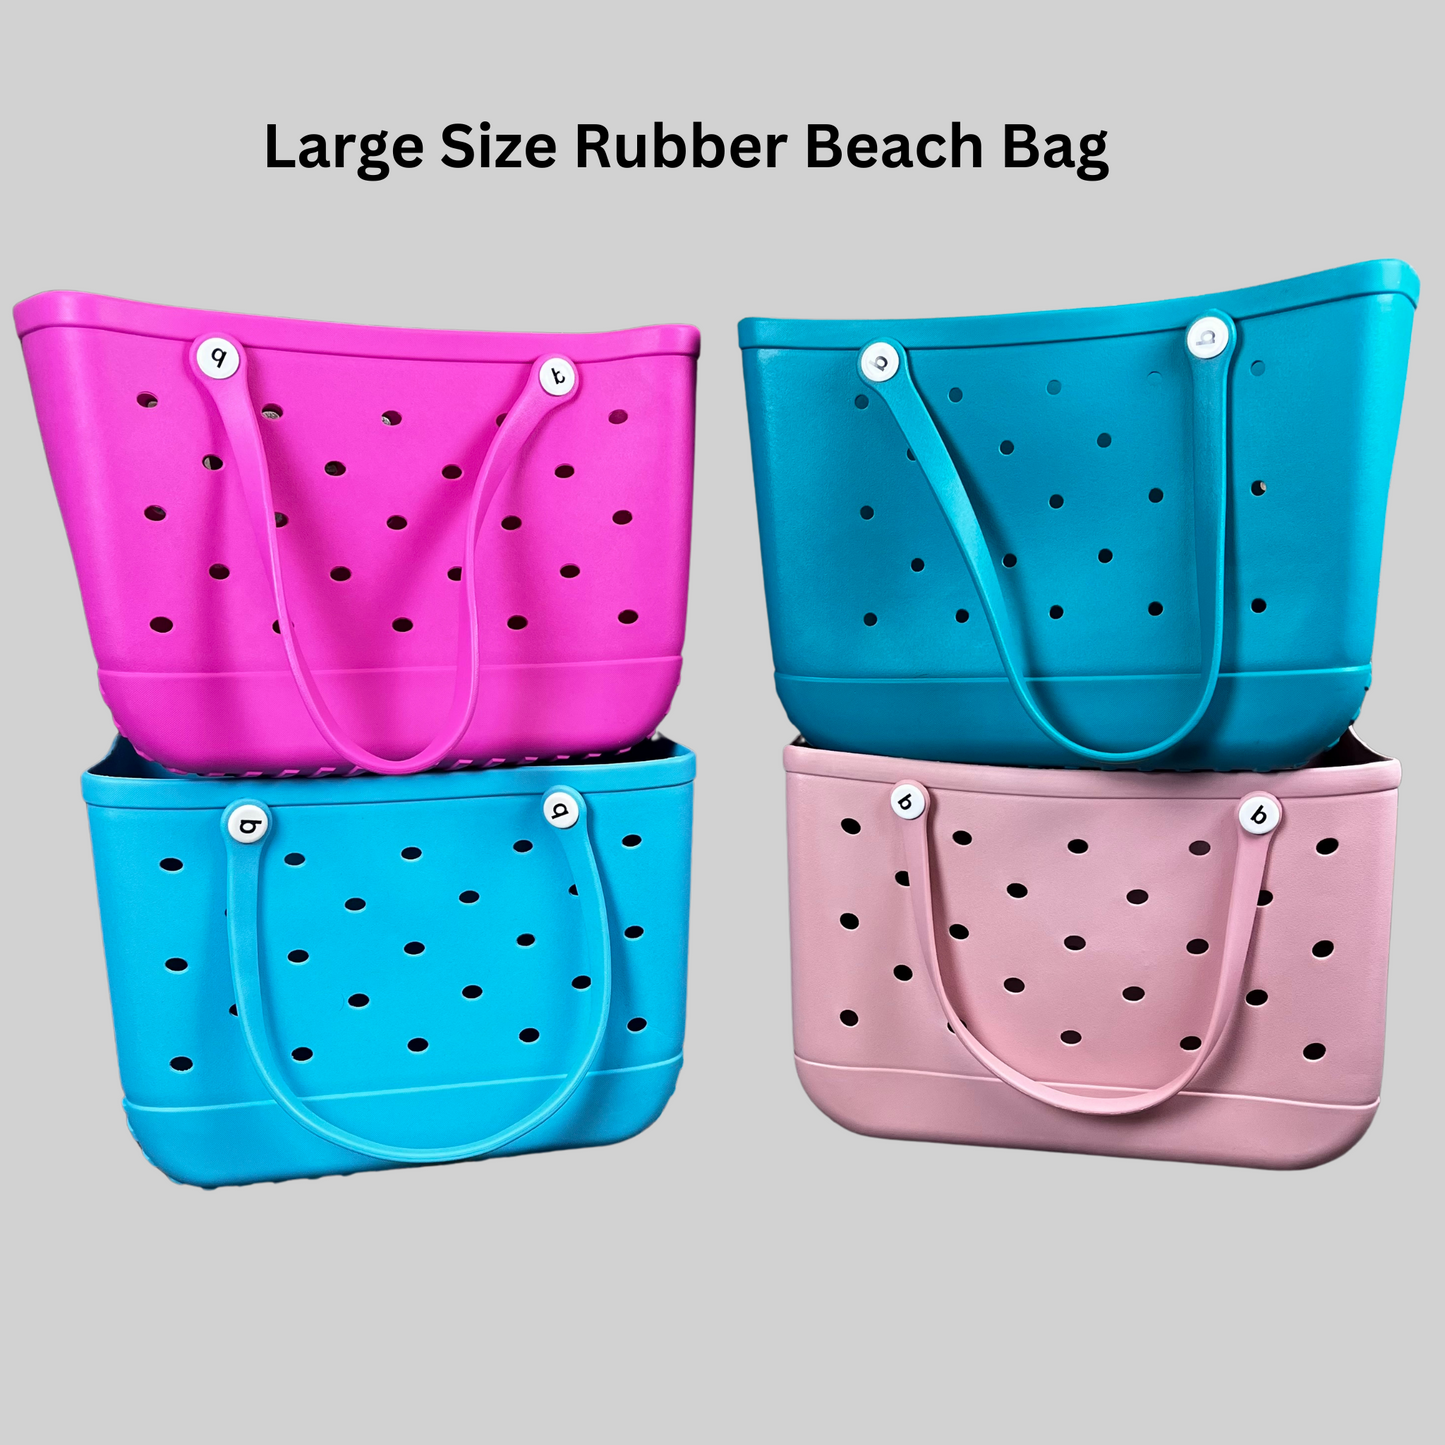 Rubber Beach Bag